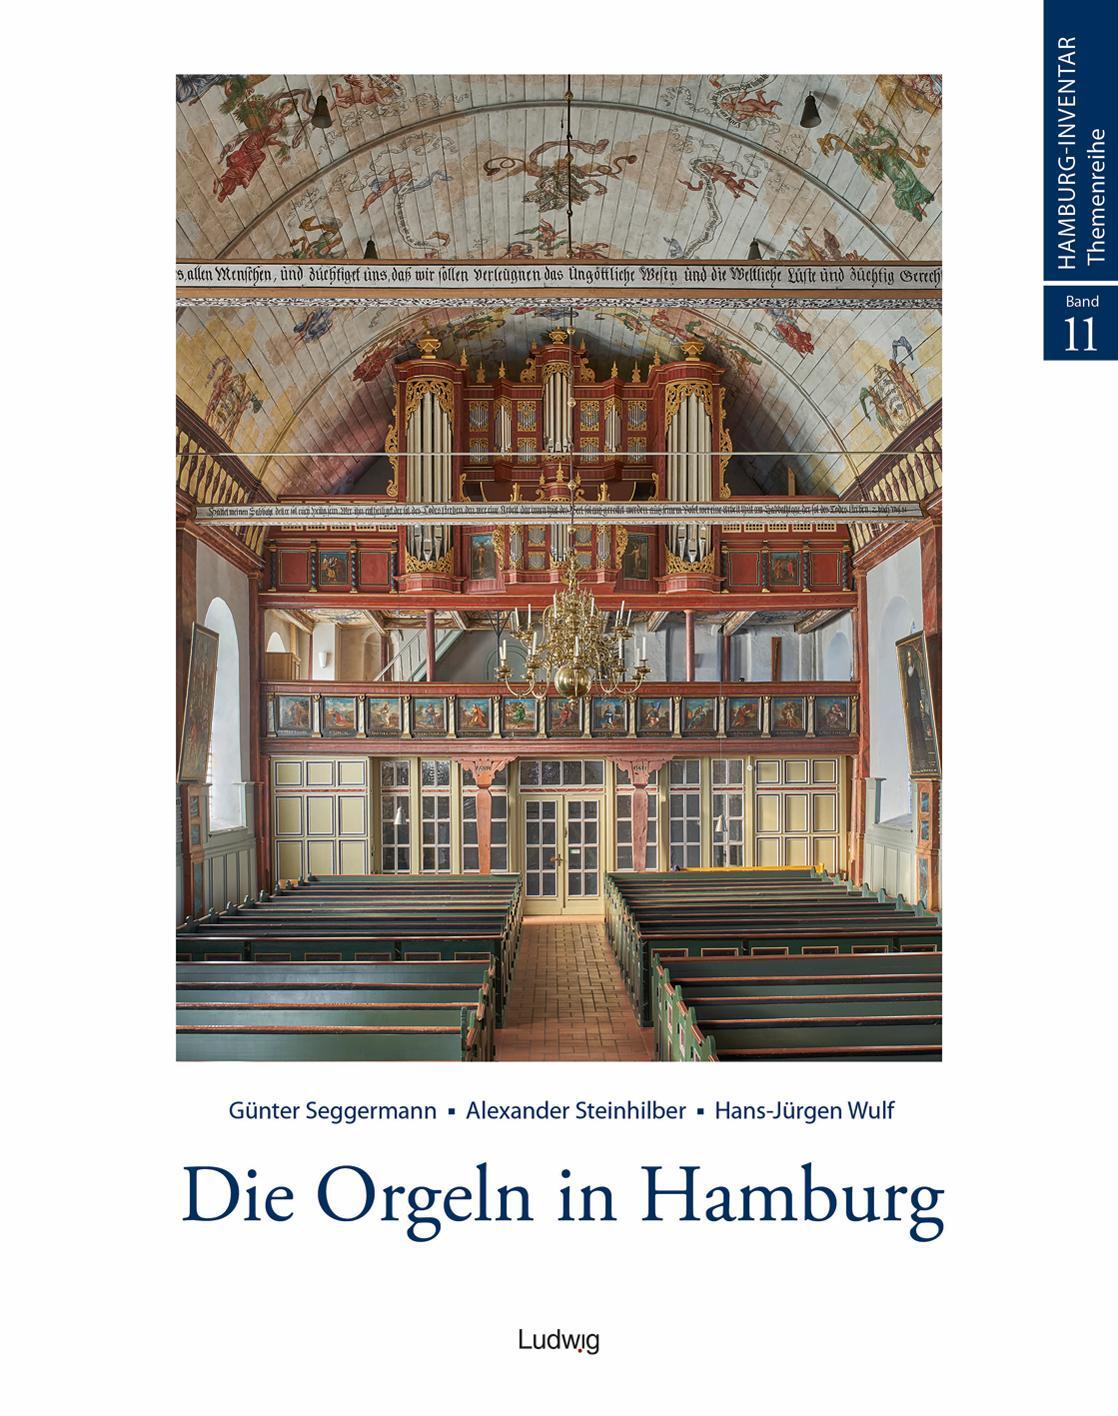 Die Orgeln in Hamburg - Seggermann, Günter